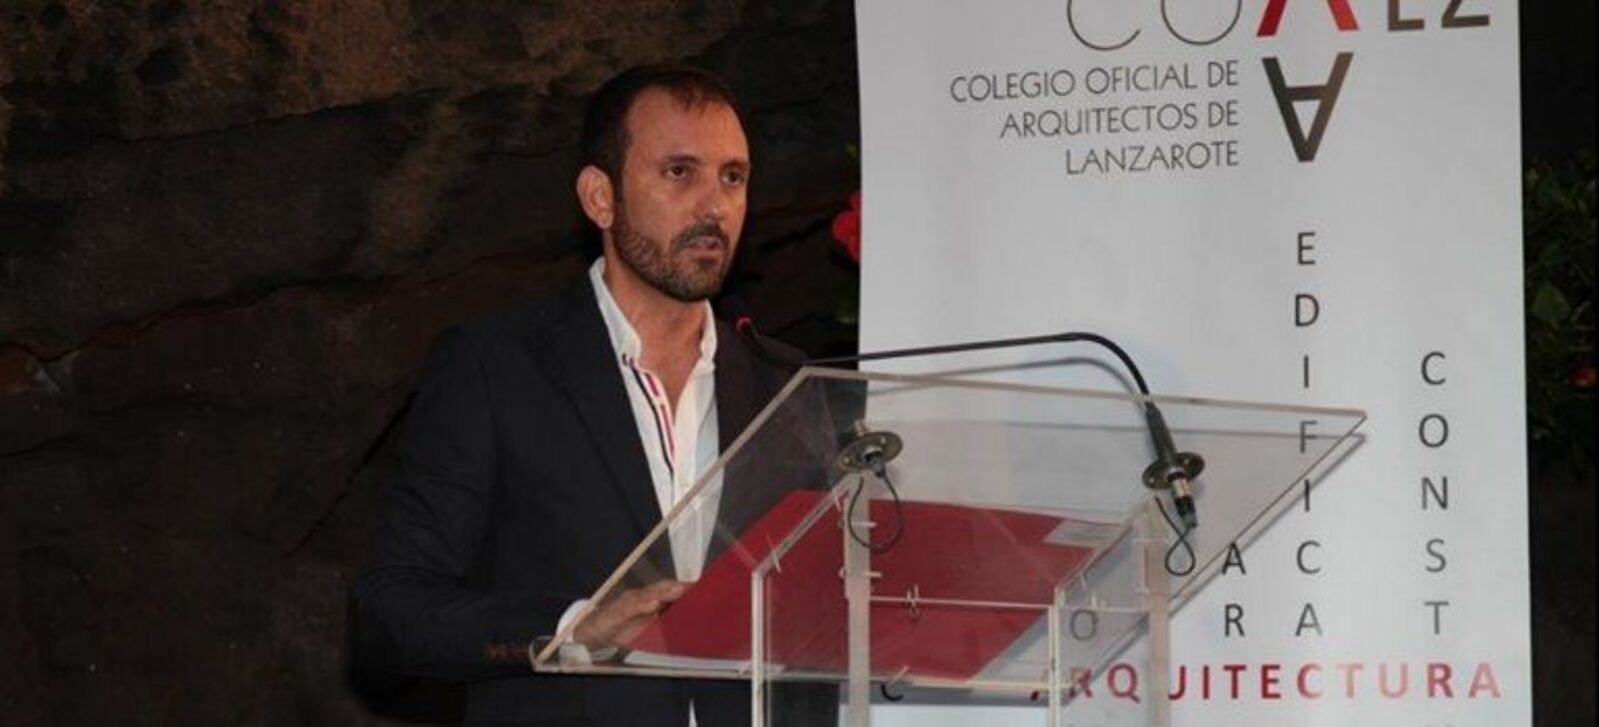 Miguel Ángel Fontes, decano del Colegio Oficial de Arquitectos de Lanzarote